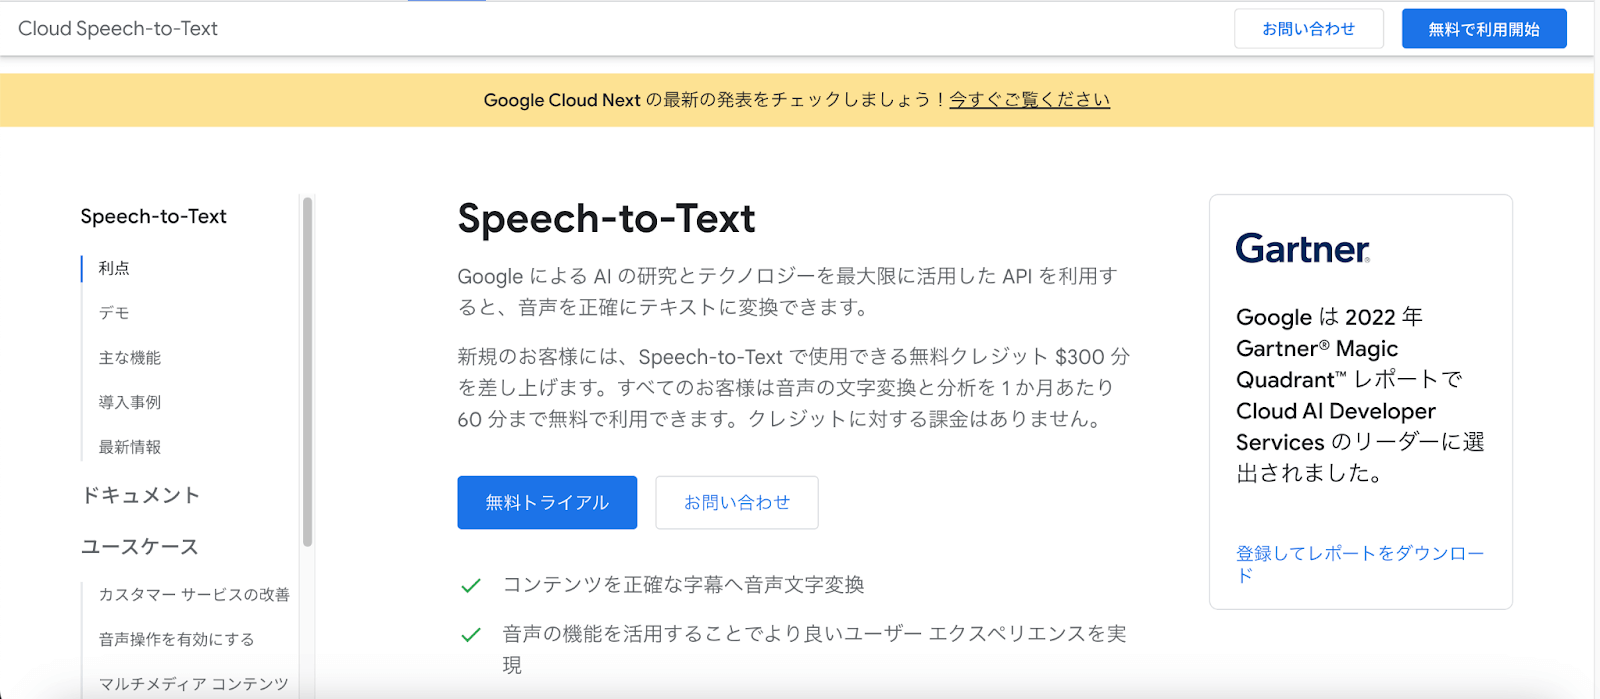 Google Cloud Speech-to-Text